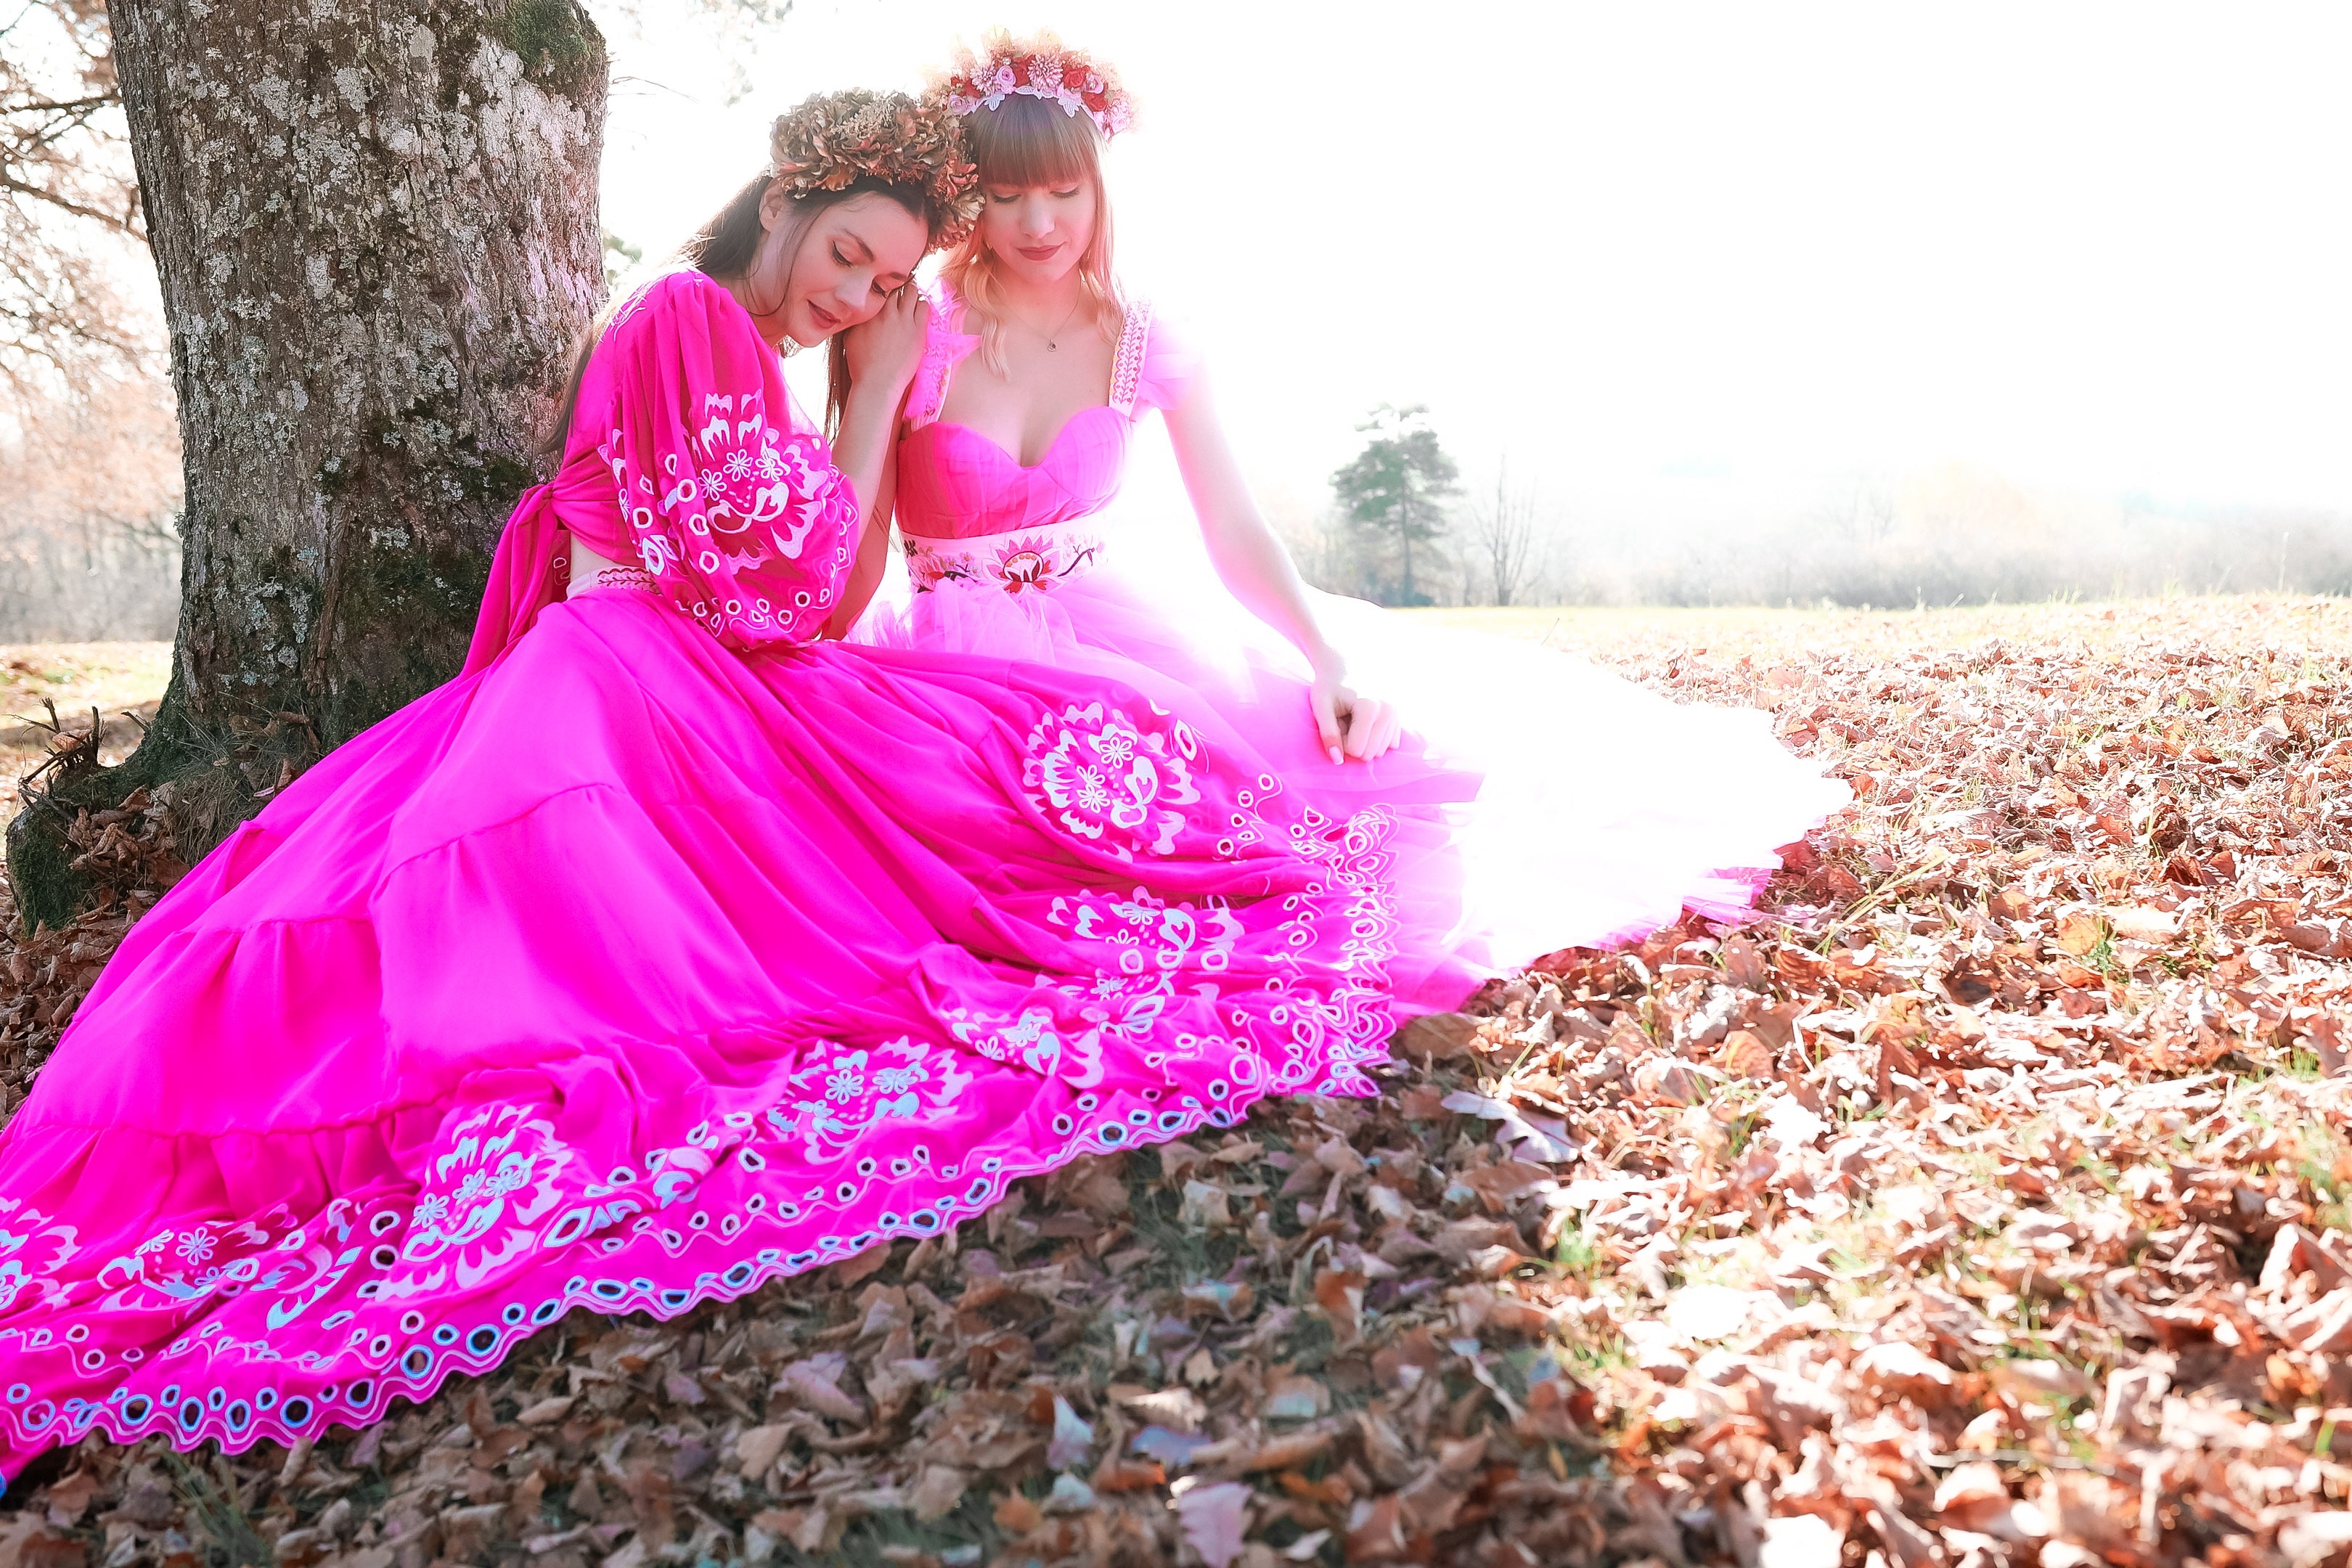 Ružová asymetrická sukňa Liptovská deva